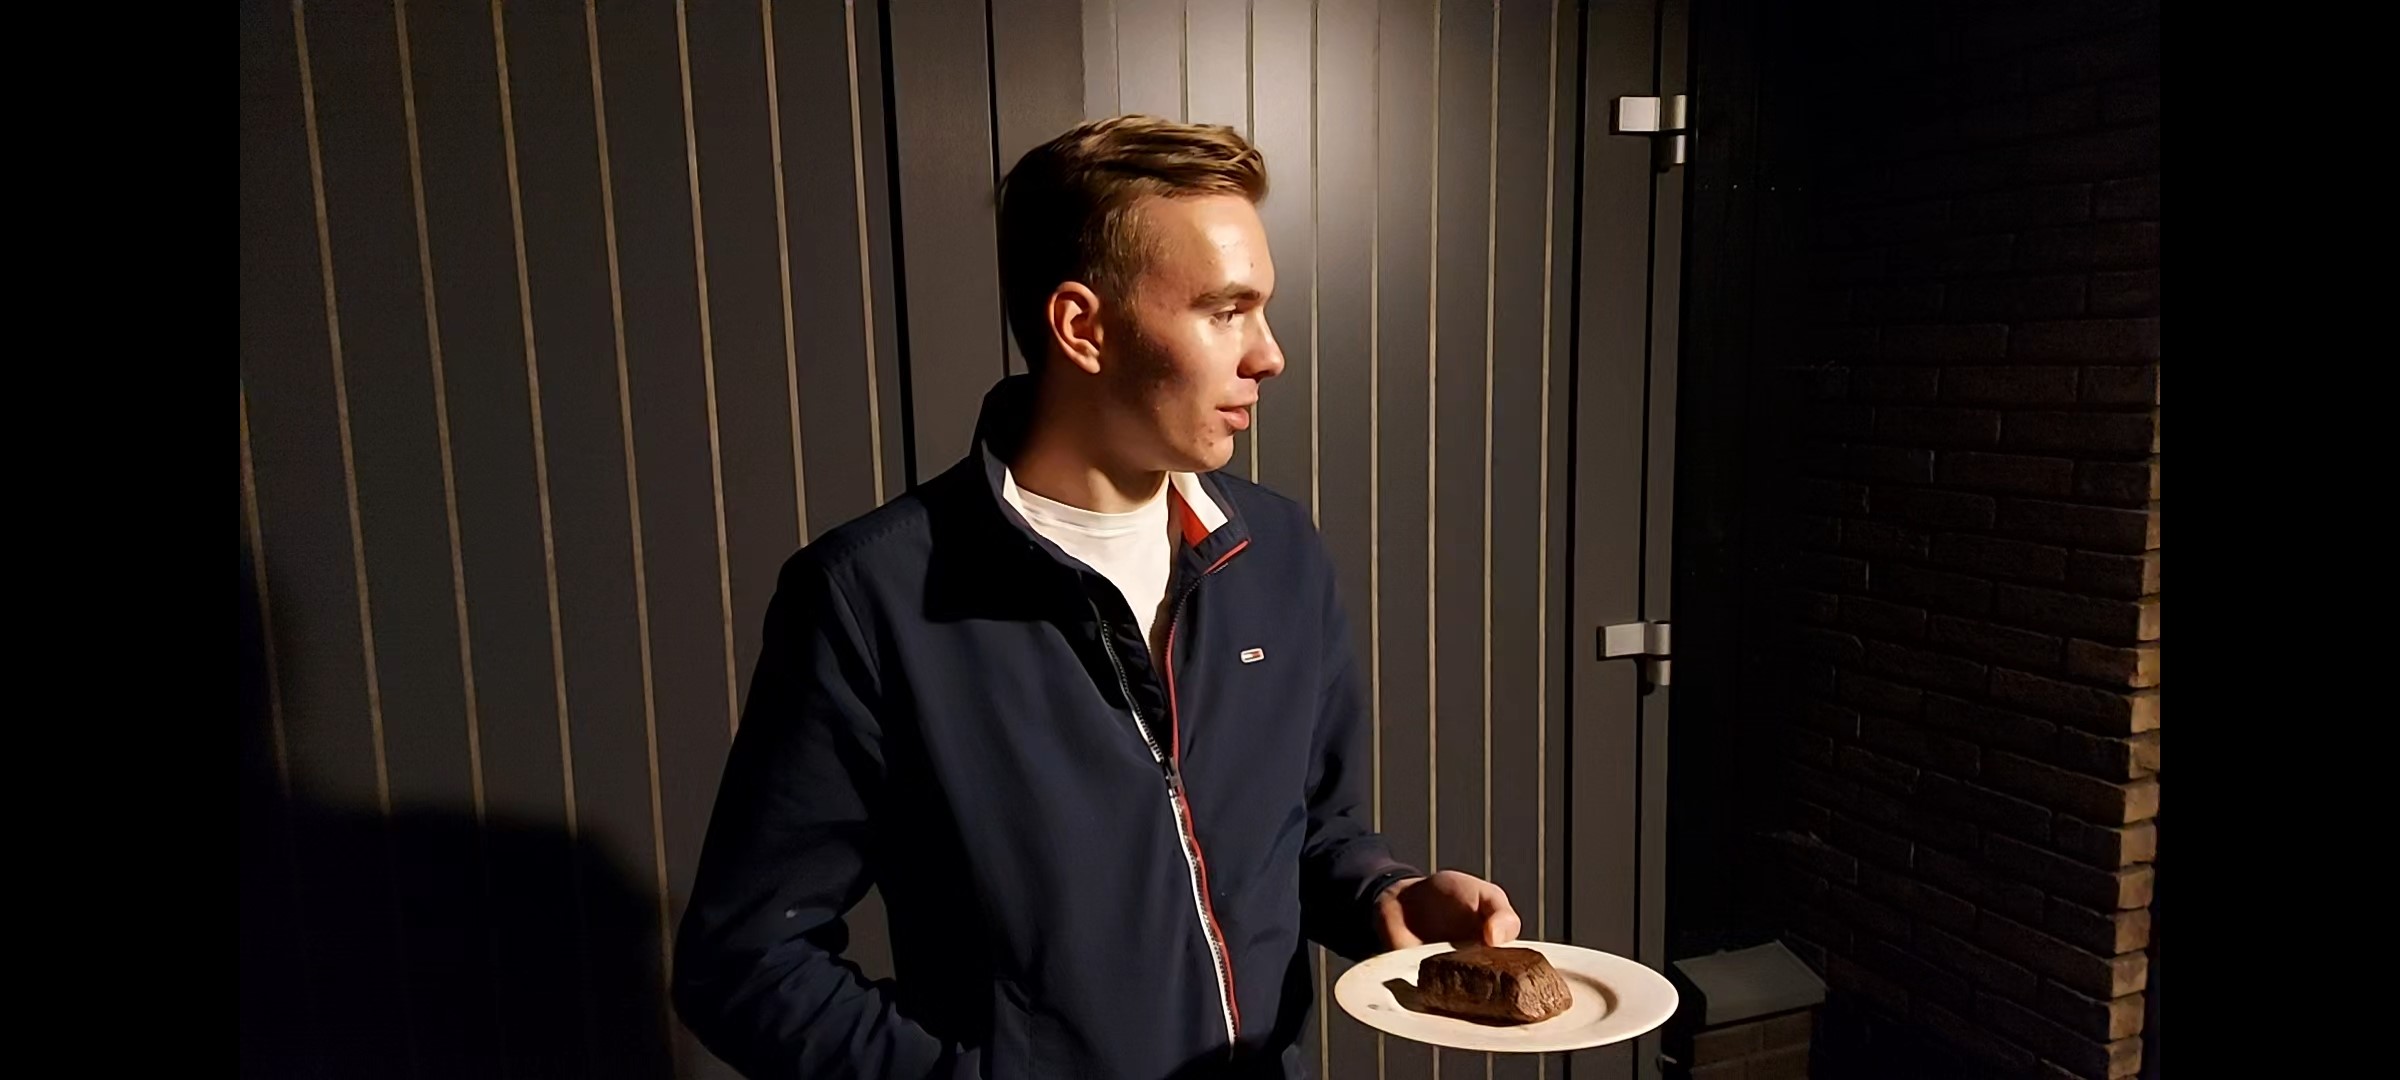 V6 leerling Lukas Top verrast docent om 3 uur ’s nachts met biefstuk